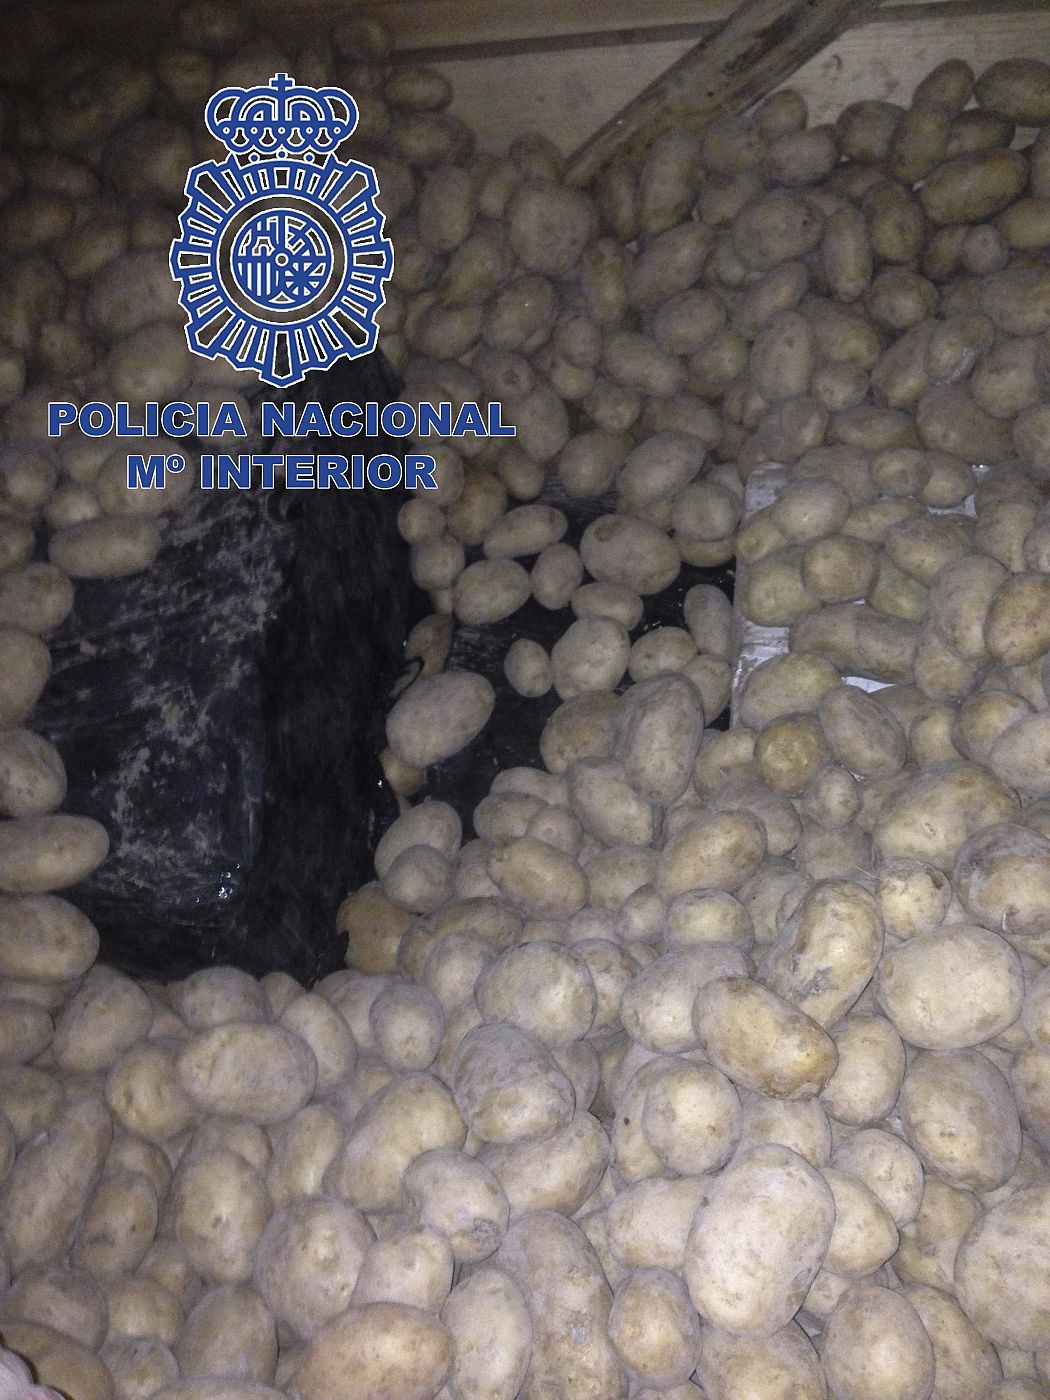 Fotografía facilitada por la Policía Nacional, que ha intervenido 350 kilos de cocaína de gran pureza entre un cargamento de patatas.